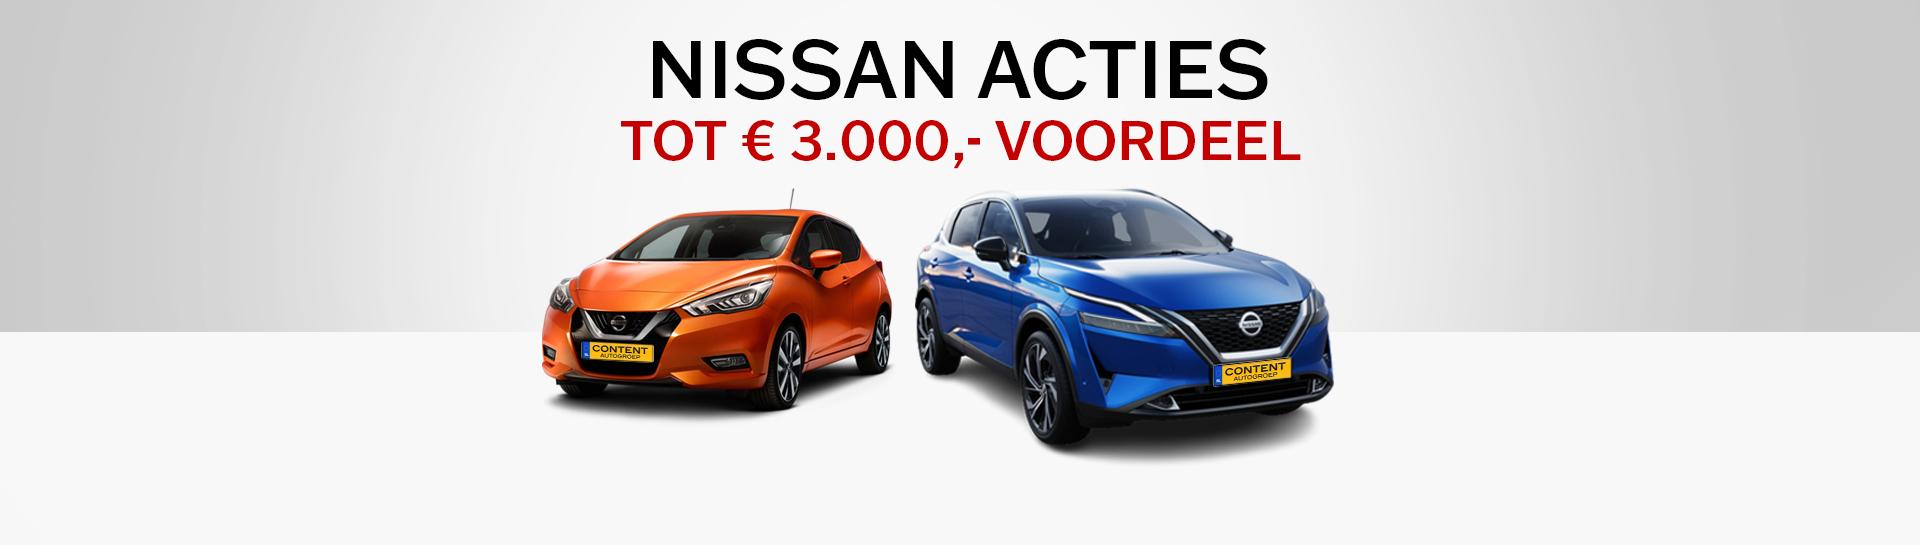 Nissan acties | tot € 3.000,- voordeel